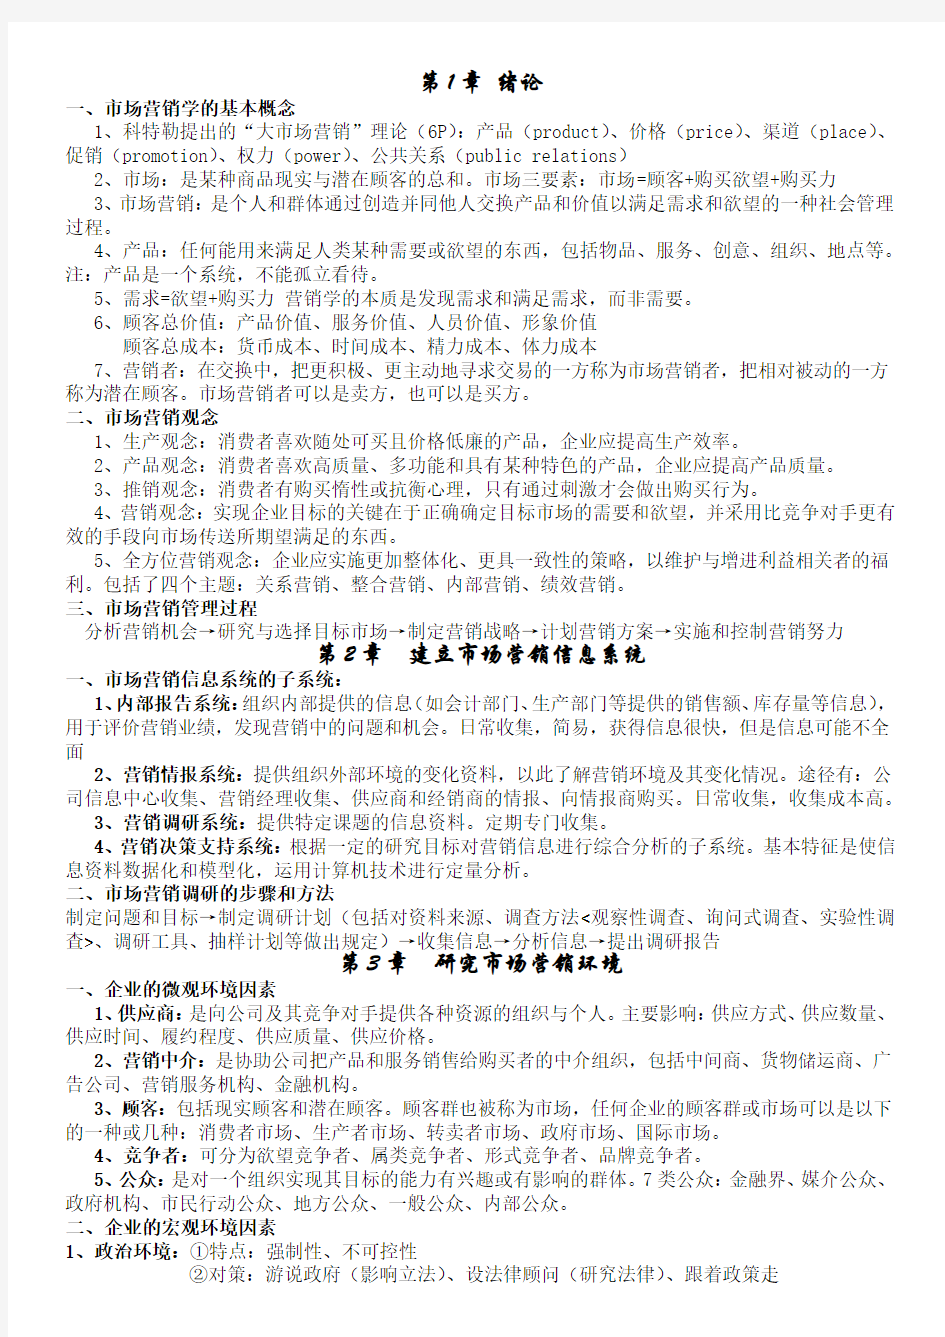 湘潭大学市场营销期末考试资料(自己整理)